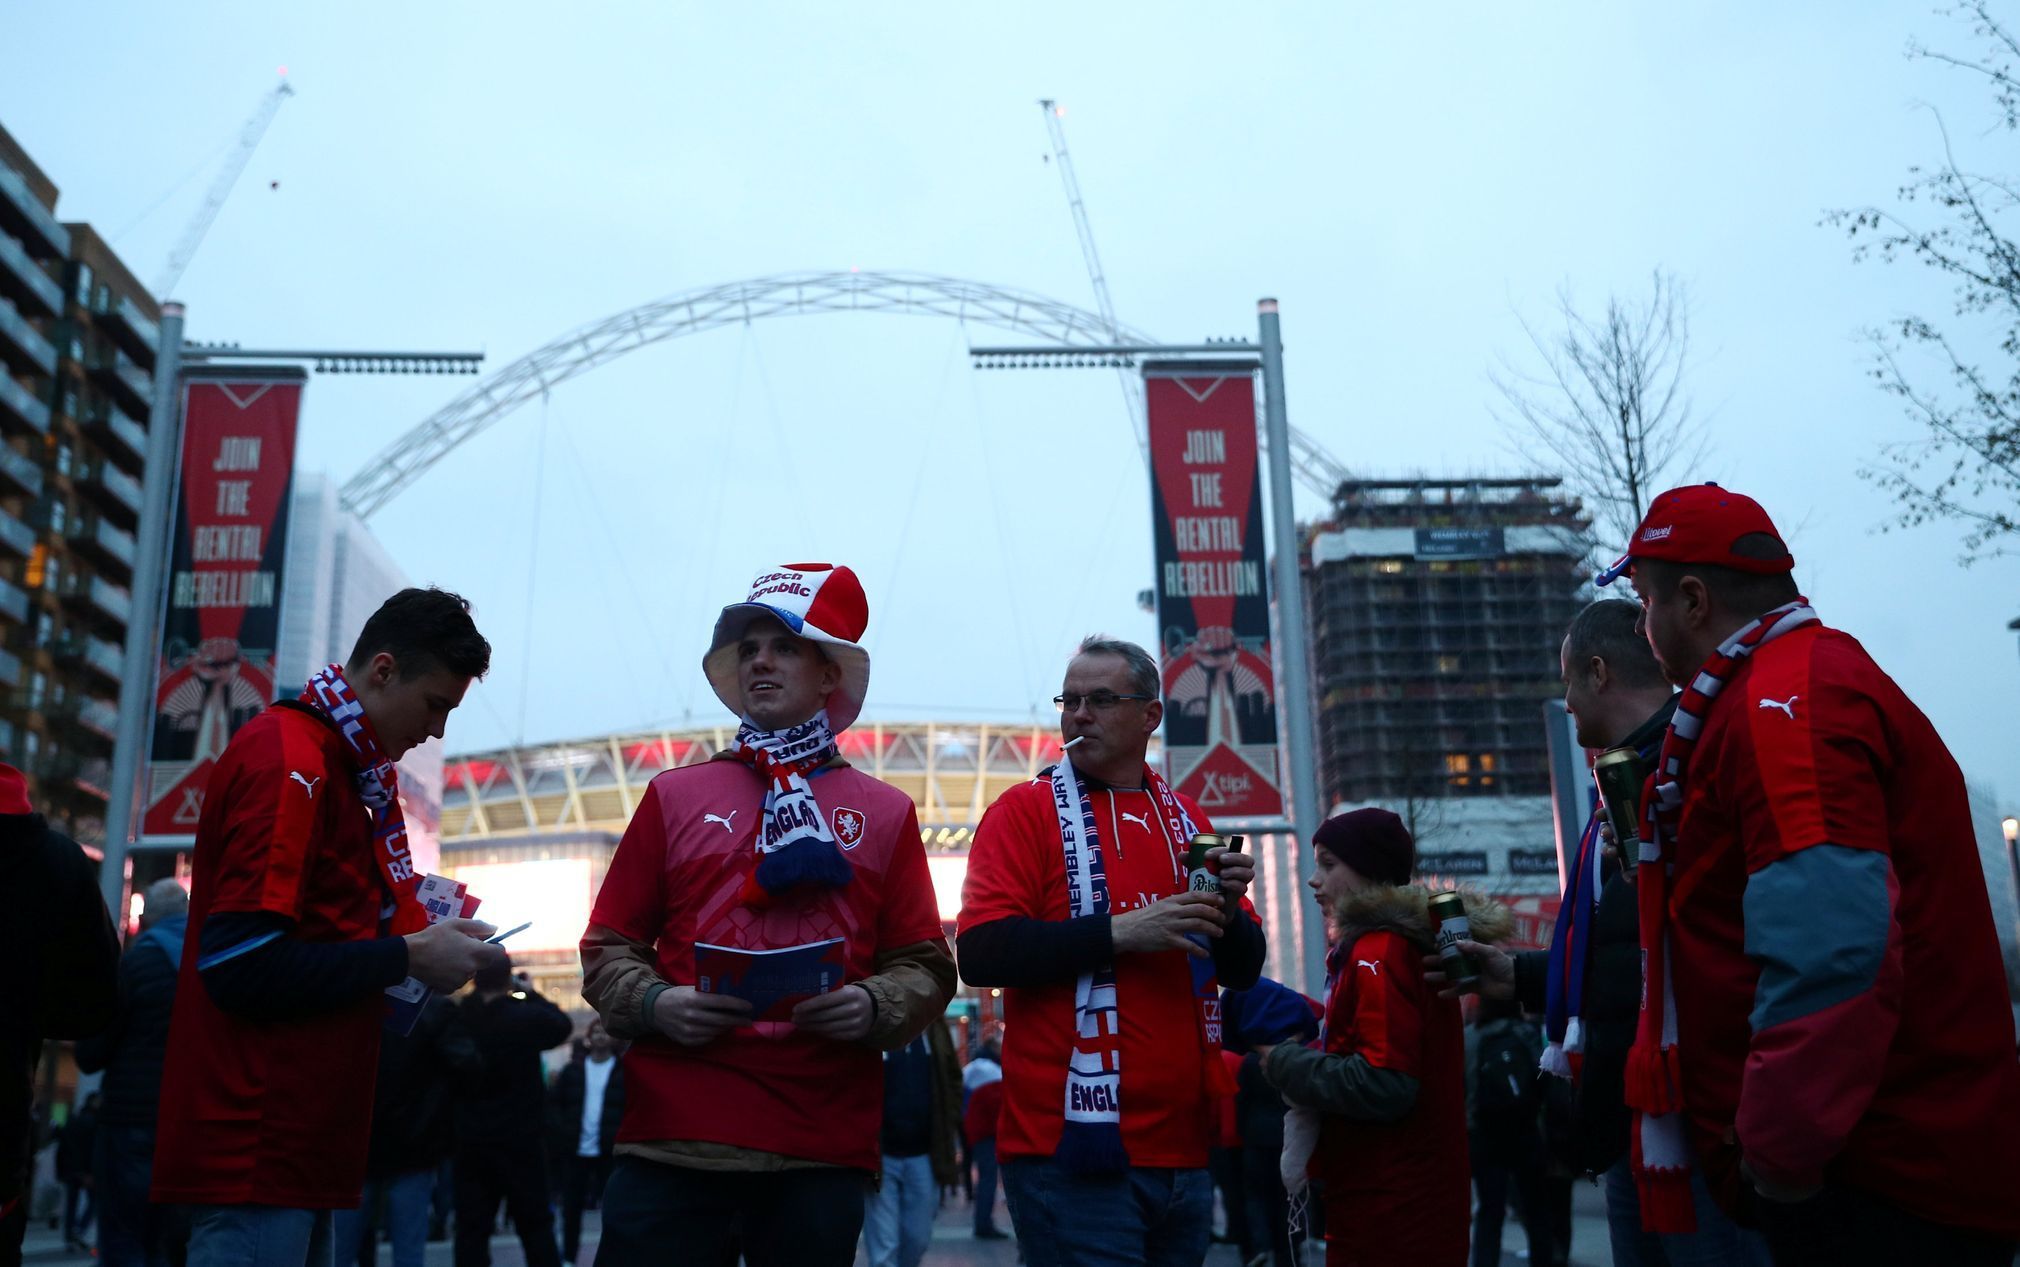 Čeští fanoušci před stadionem Wembley před zápasem kvalifikace ME 2020 Anglie - Česko.